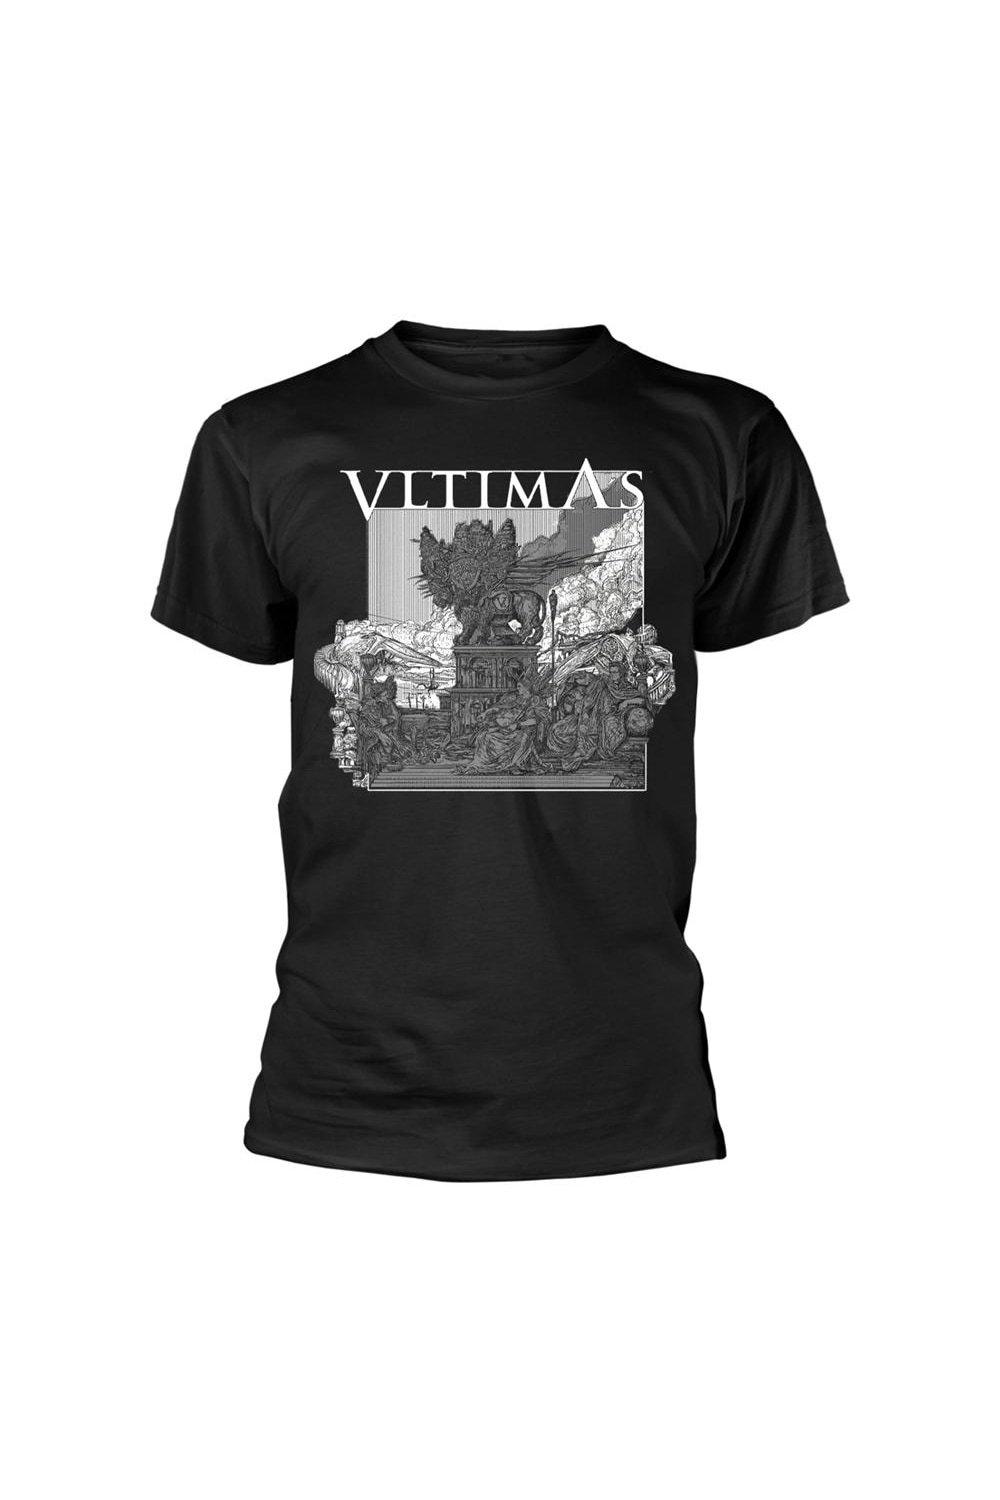 Что-то злое марширует в футболке Vltimas, черный трафаретная печать по ткани